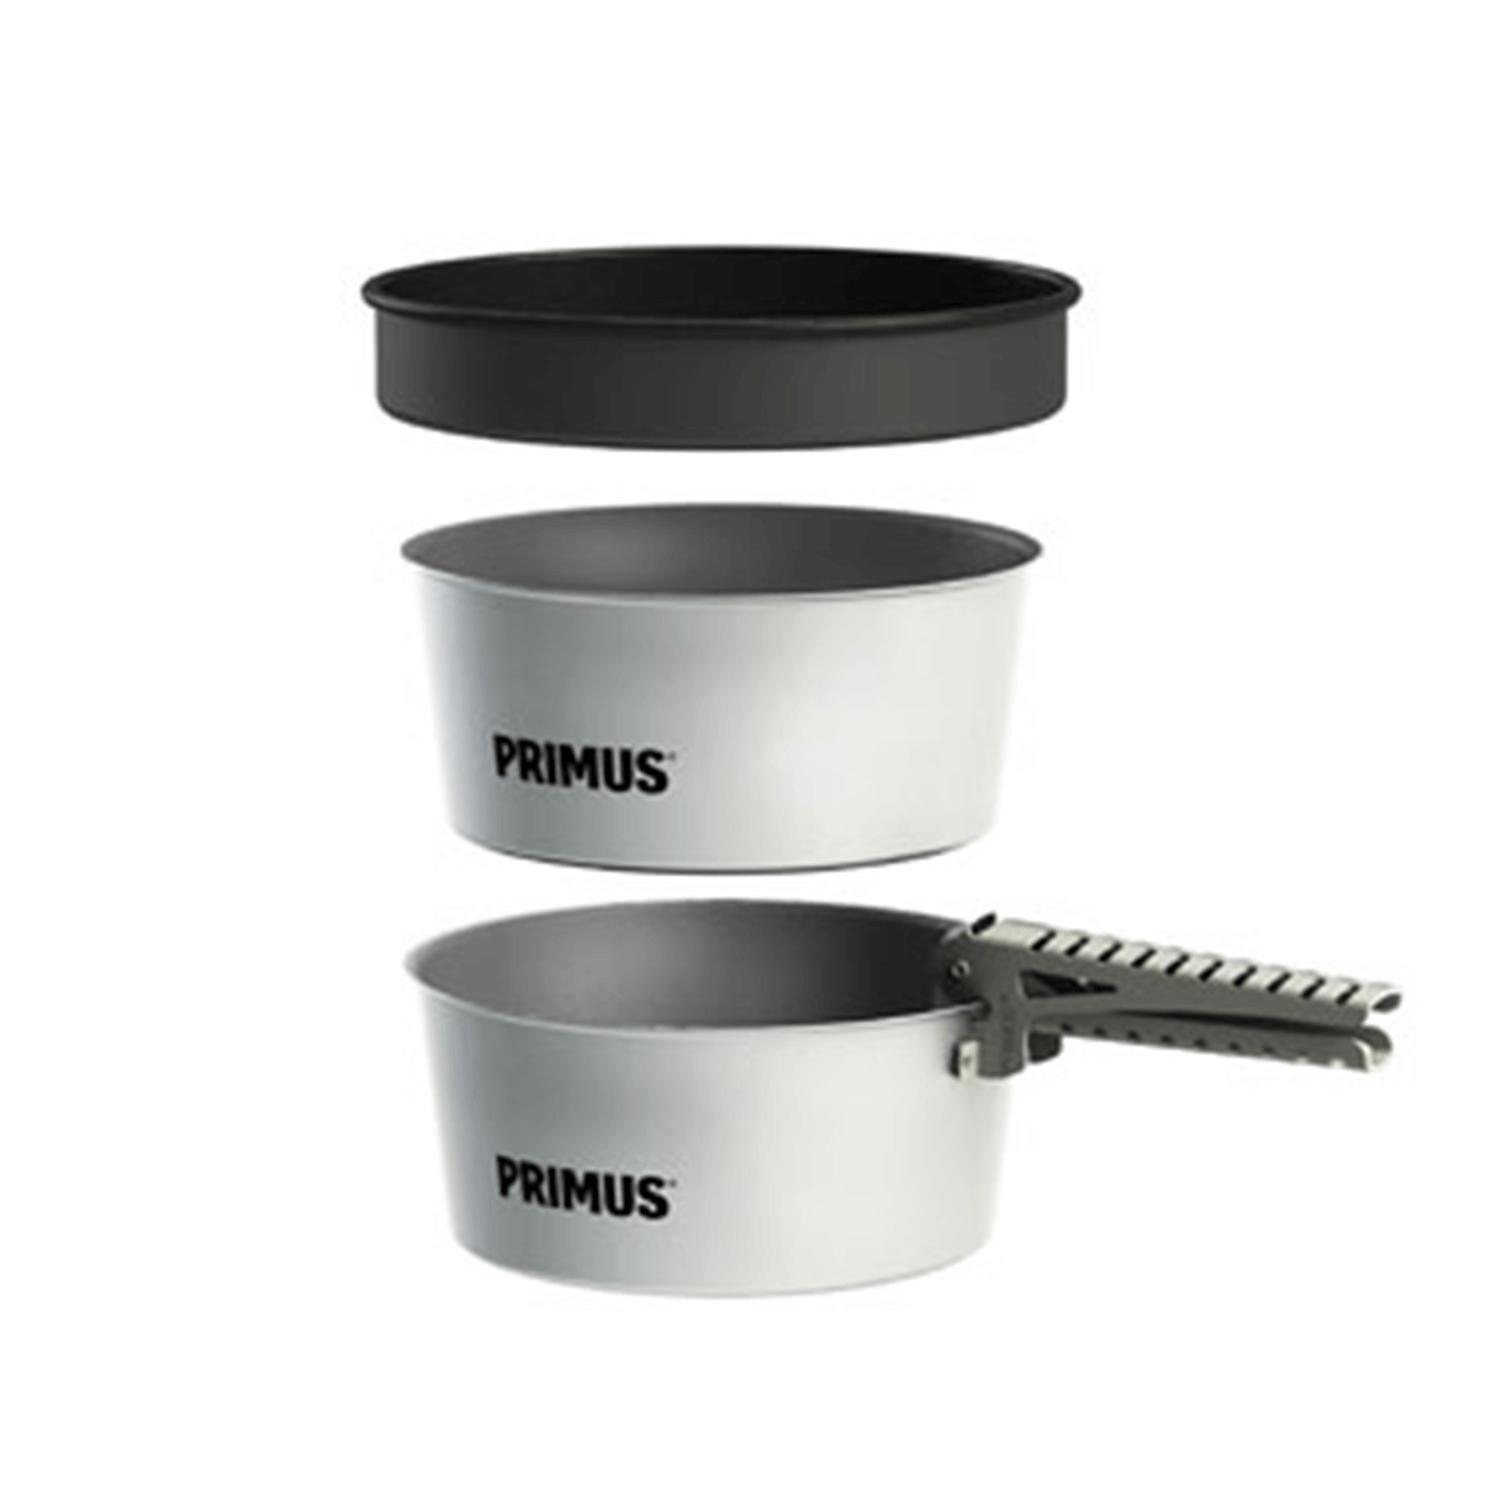 Primus Potset Essentials 2x1,3L